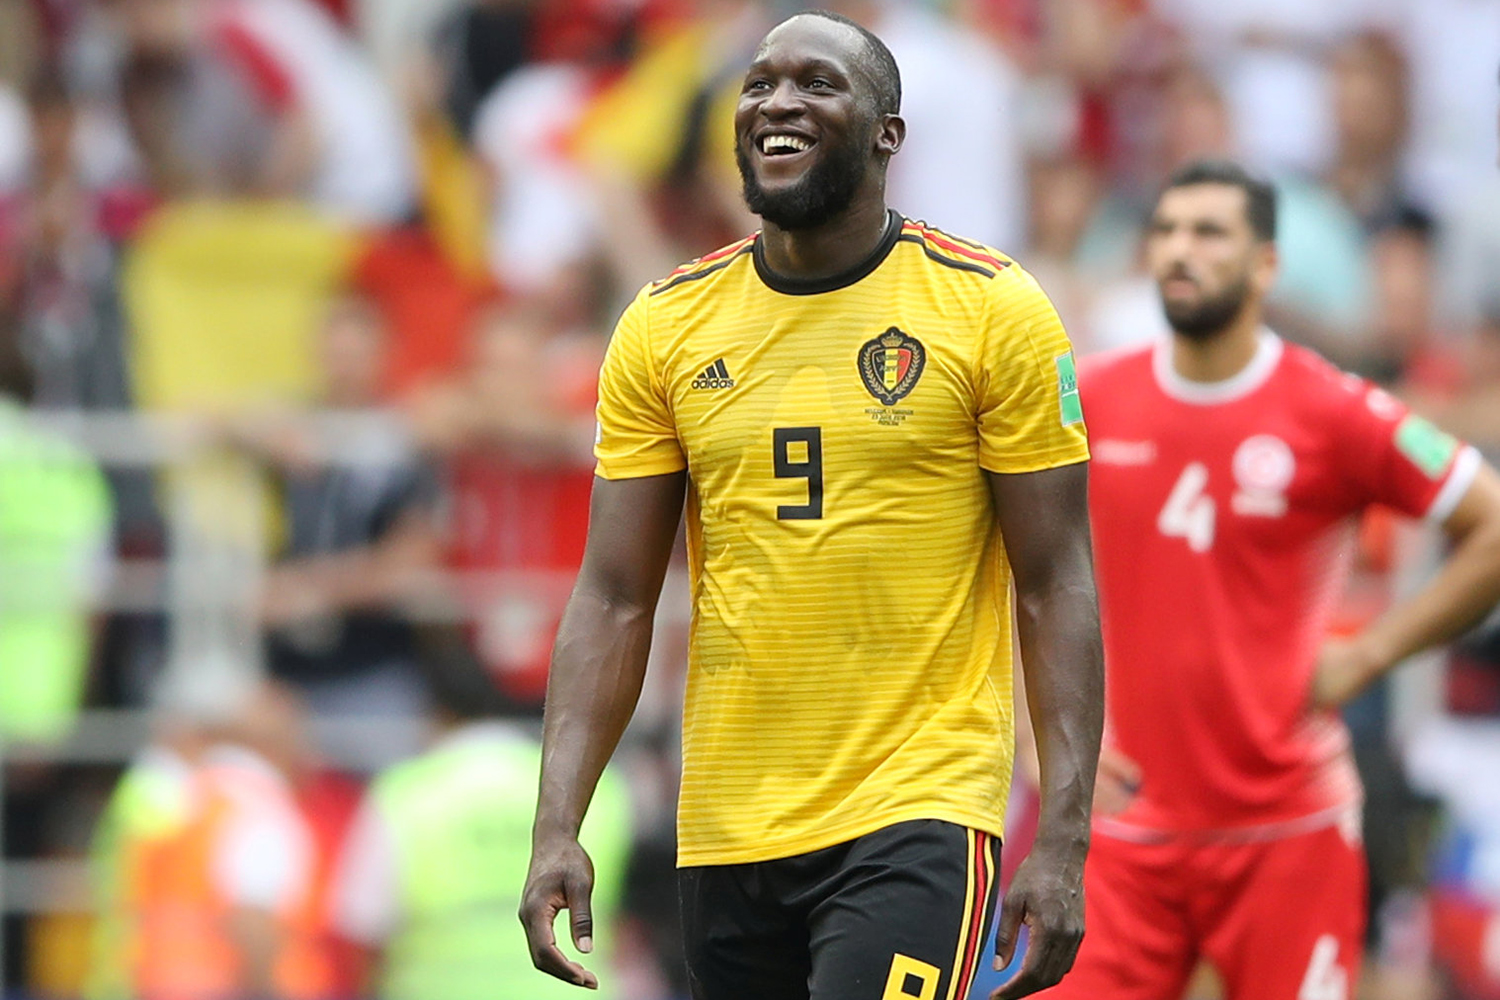 Bélgica vence com a fome de gols de Lukaku | VEJA